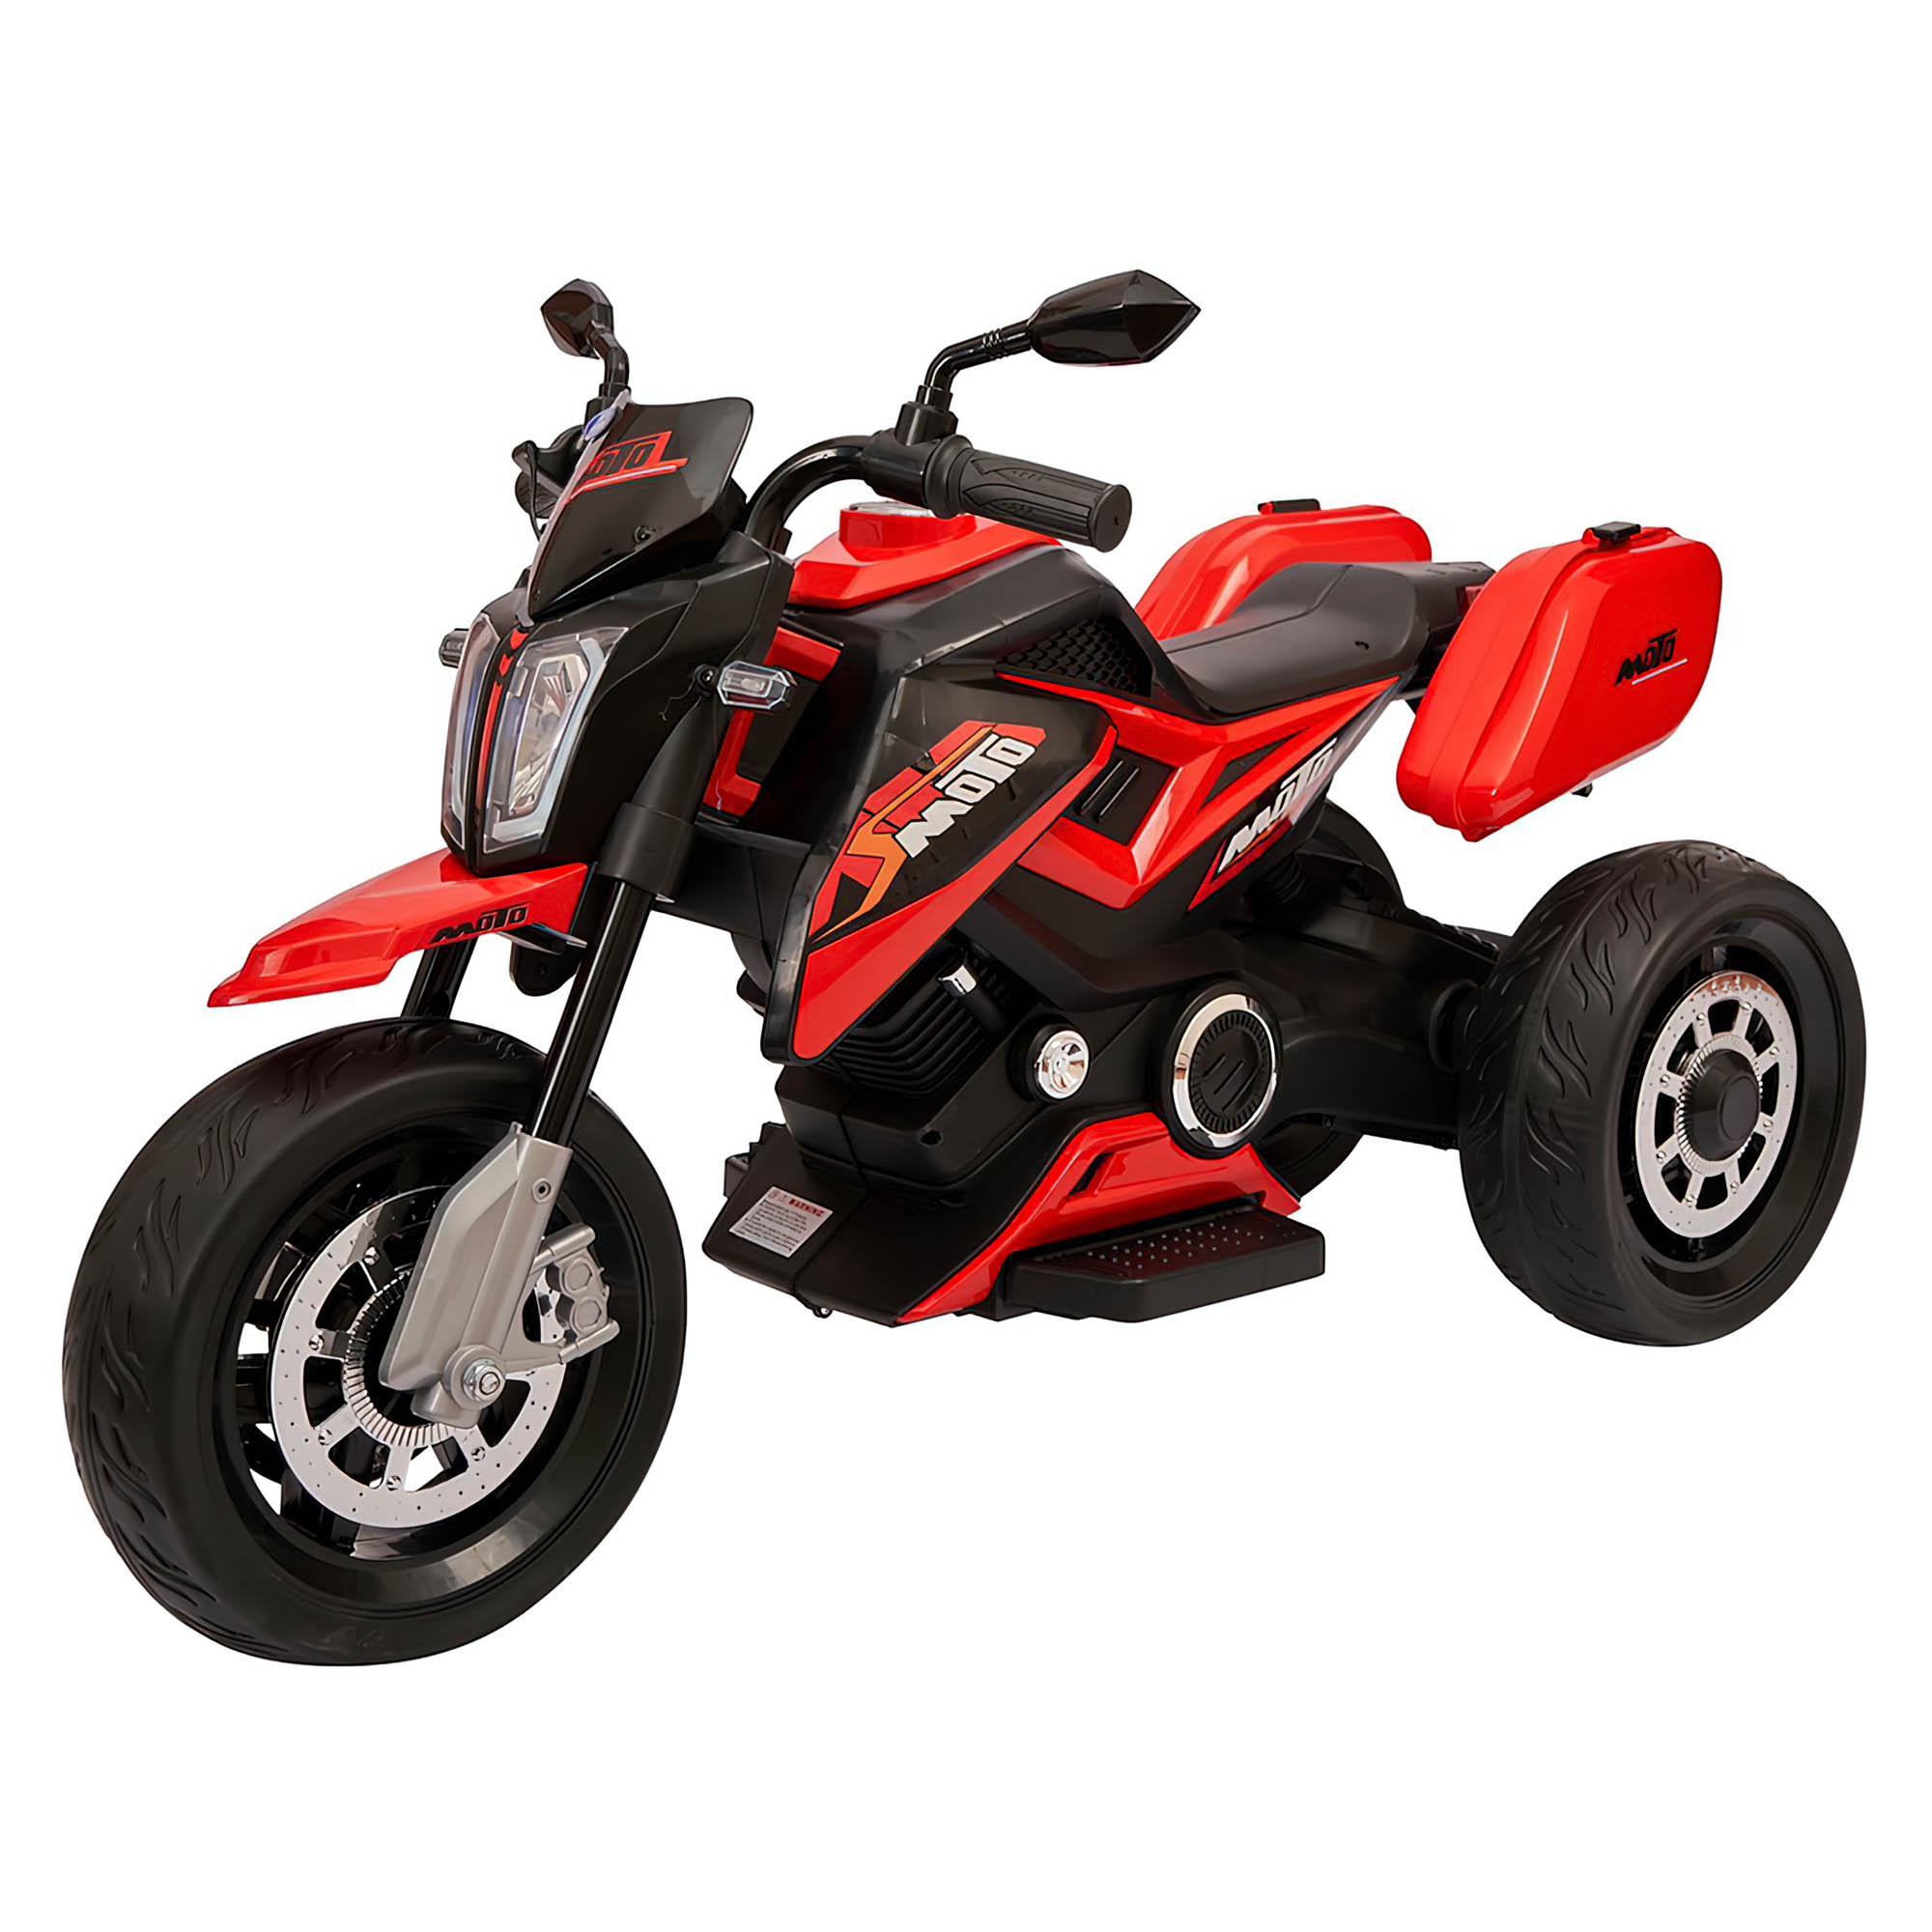 Motocicleta electrica pentru copii KTM JE-261